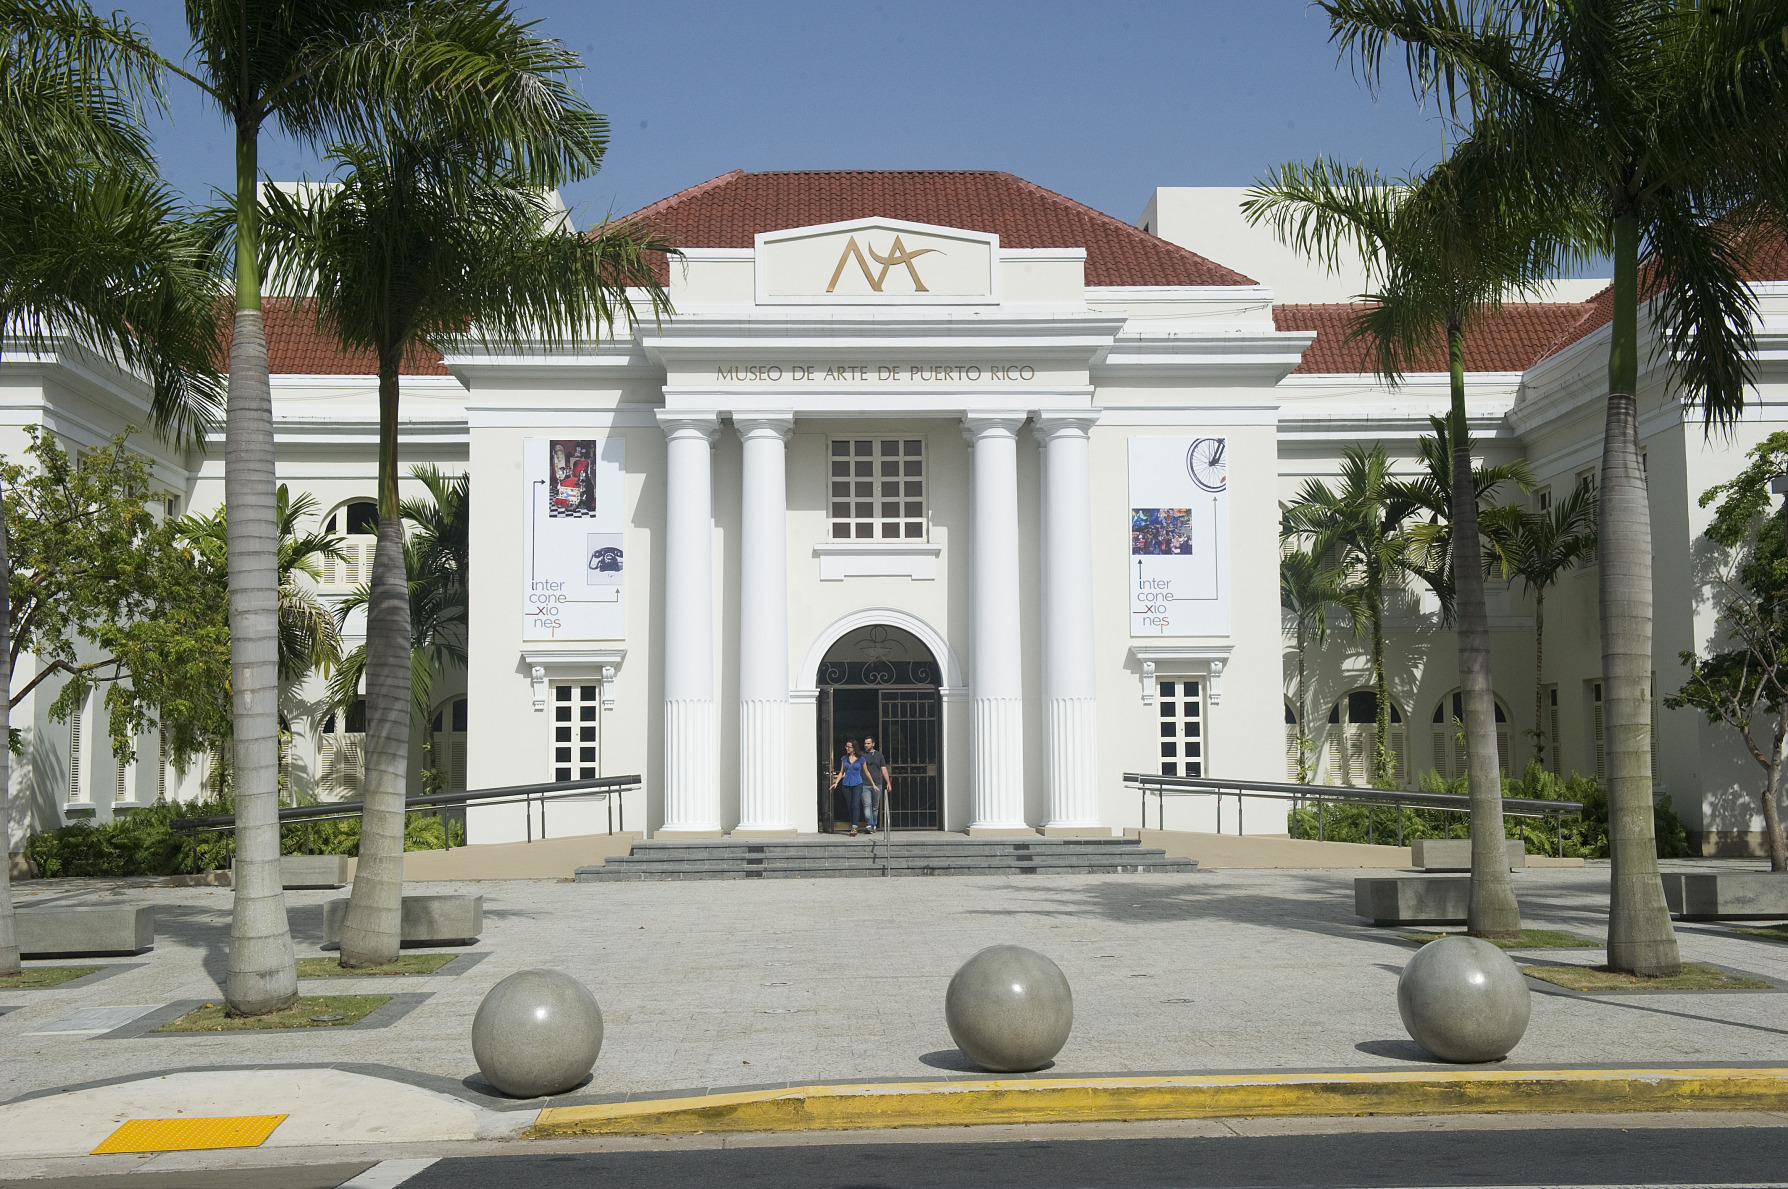 The entrance of the Museo de Arte de Puerto Rico in San Juan.